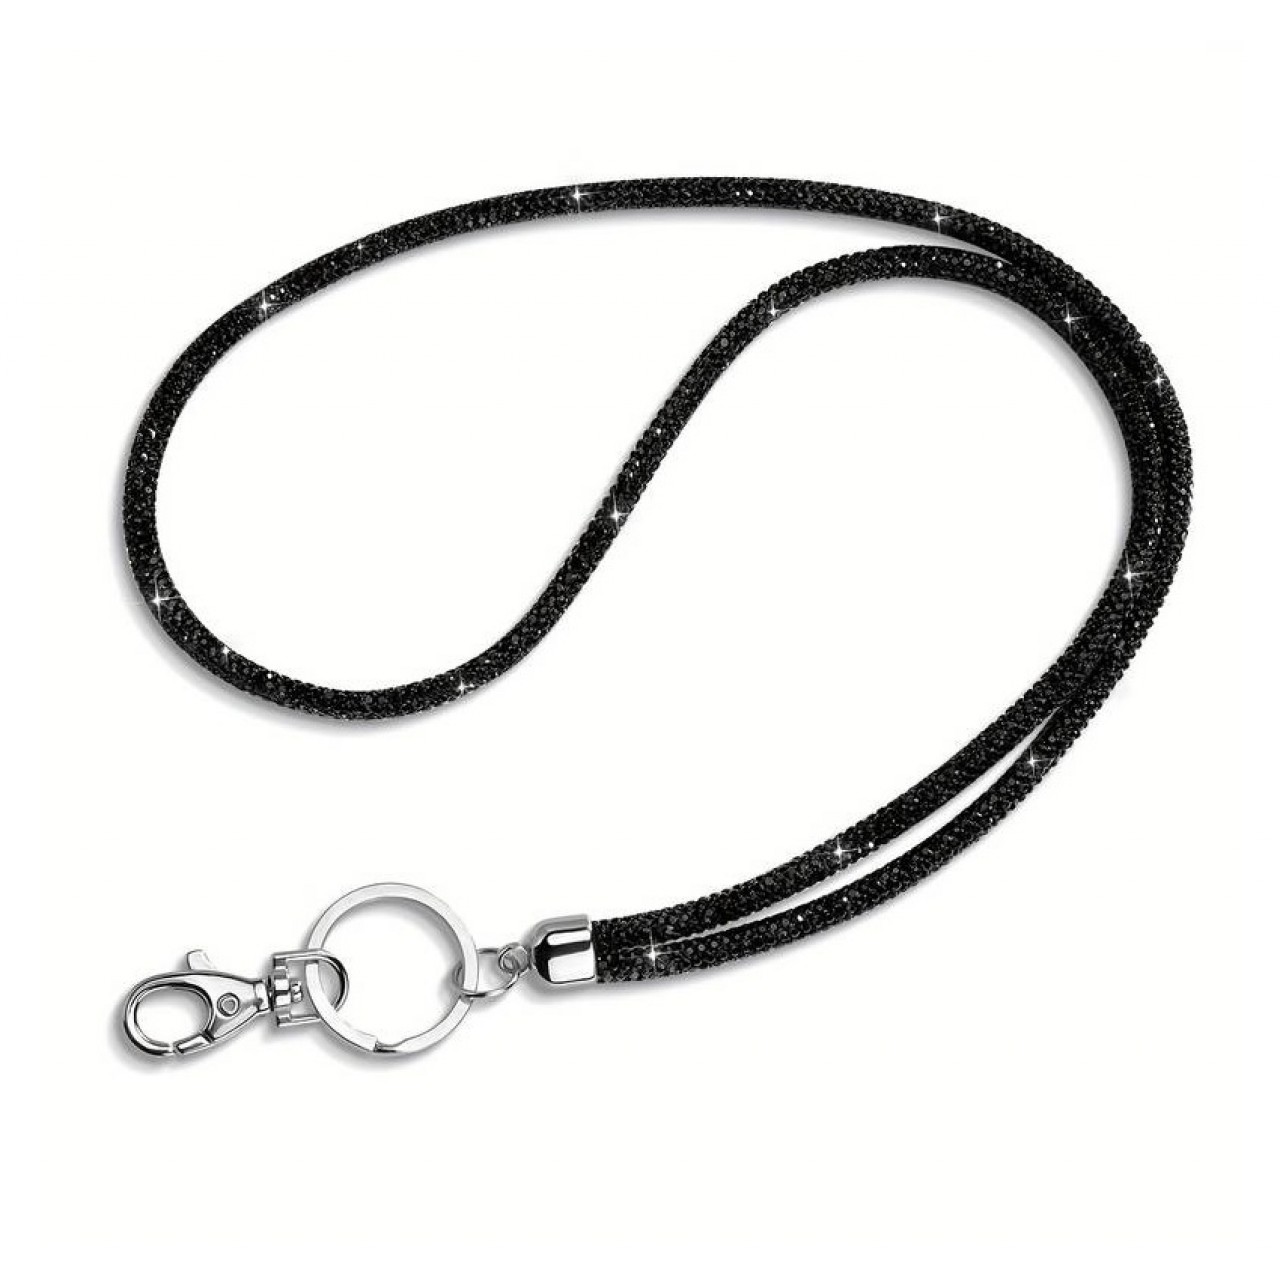 Λουράκι Λαιμού Κινητού Στρας με Μεταλλικό Δαχτυλίδι Μαύρο - Black Mobile Strass Necklace